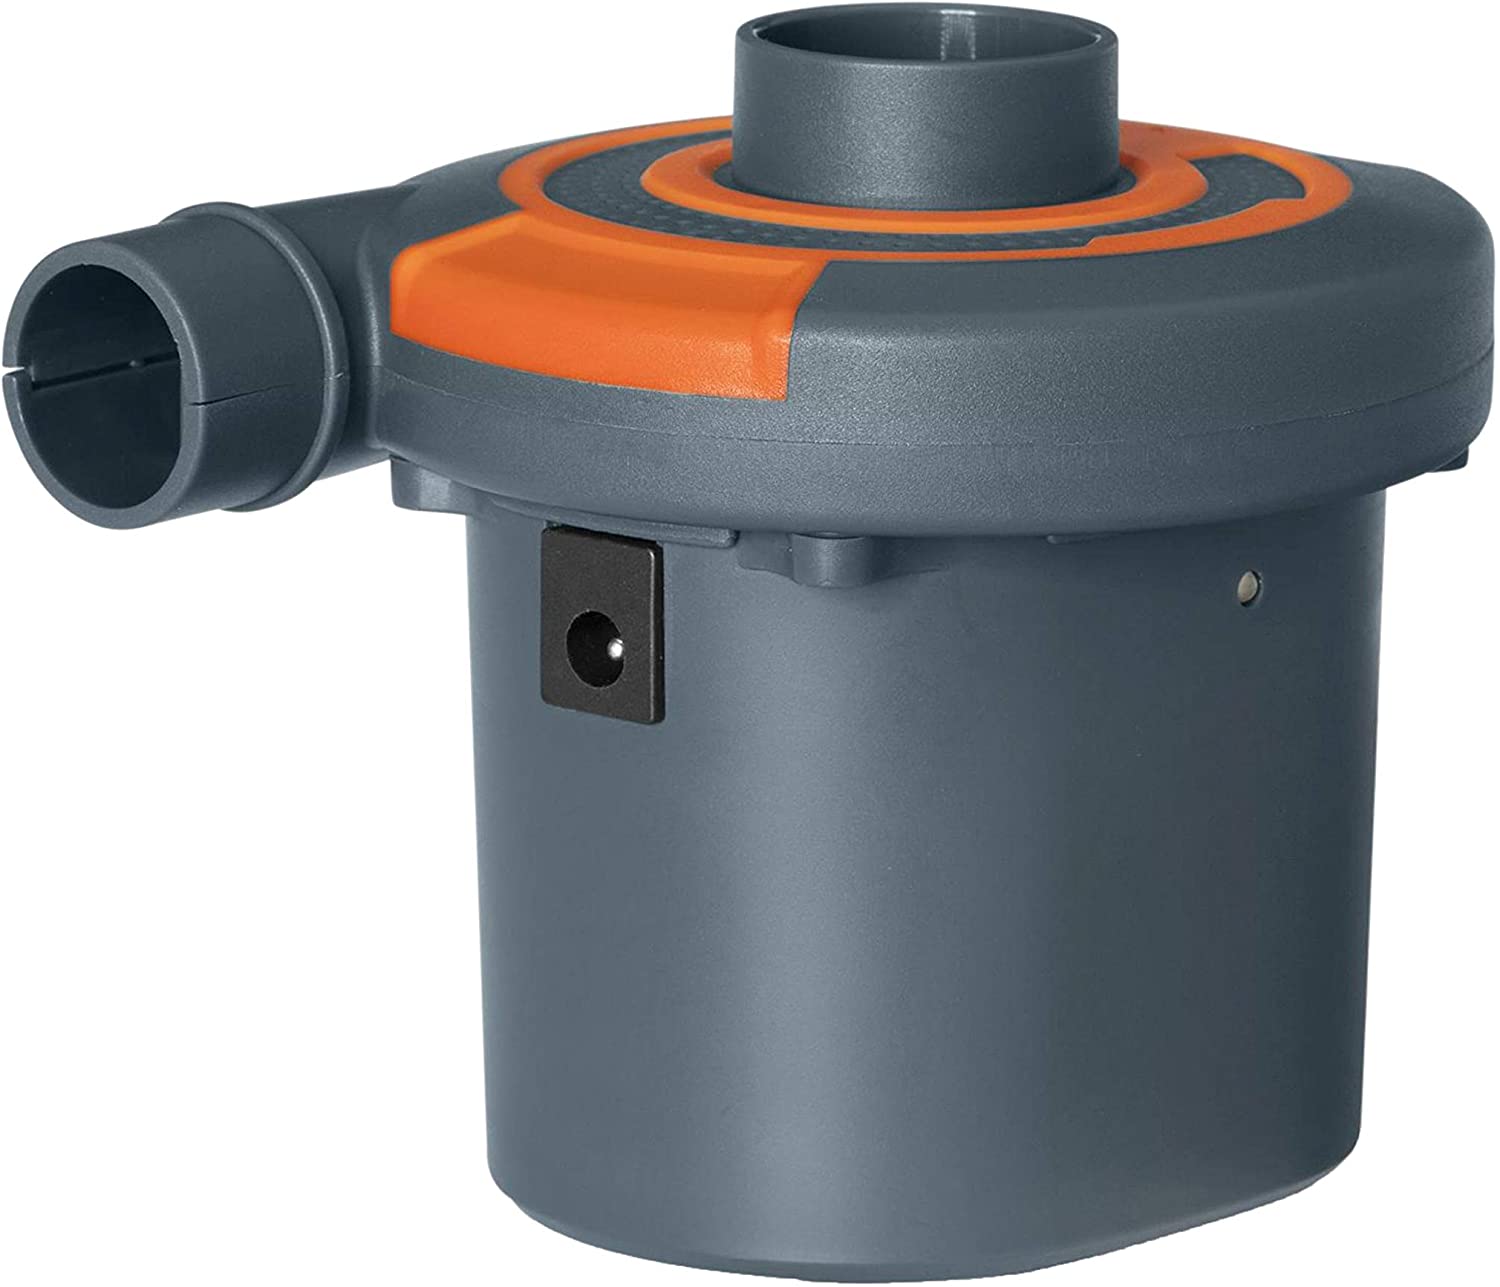 Bestway Cordless Electric Air Pump Sidewinder 4.8V (grey, 220-240V)  